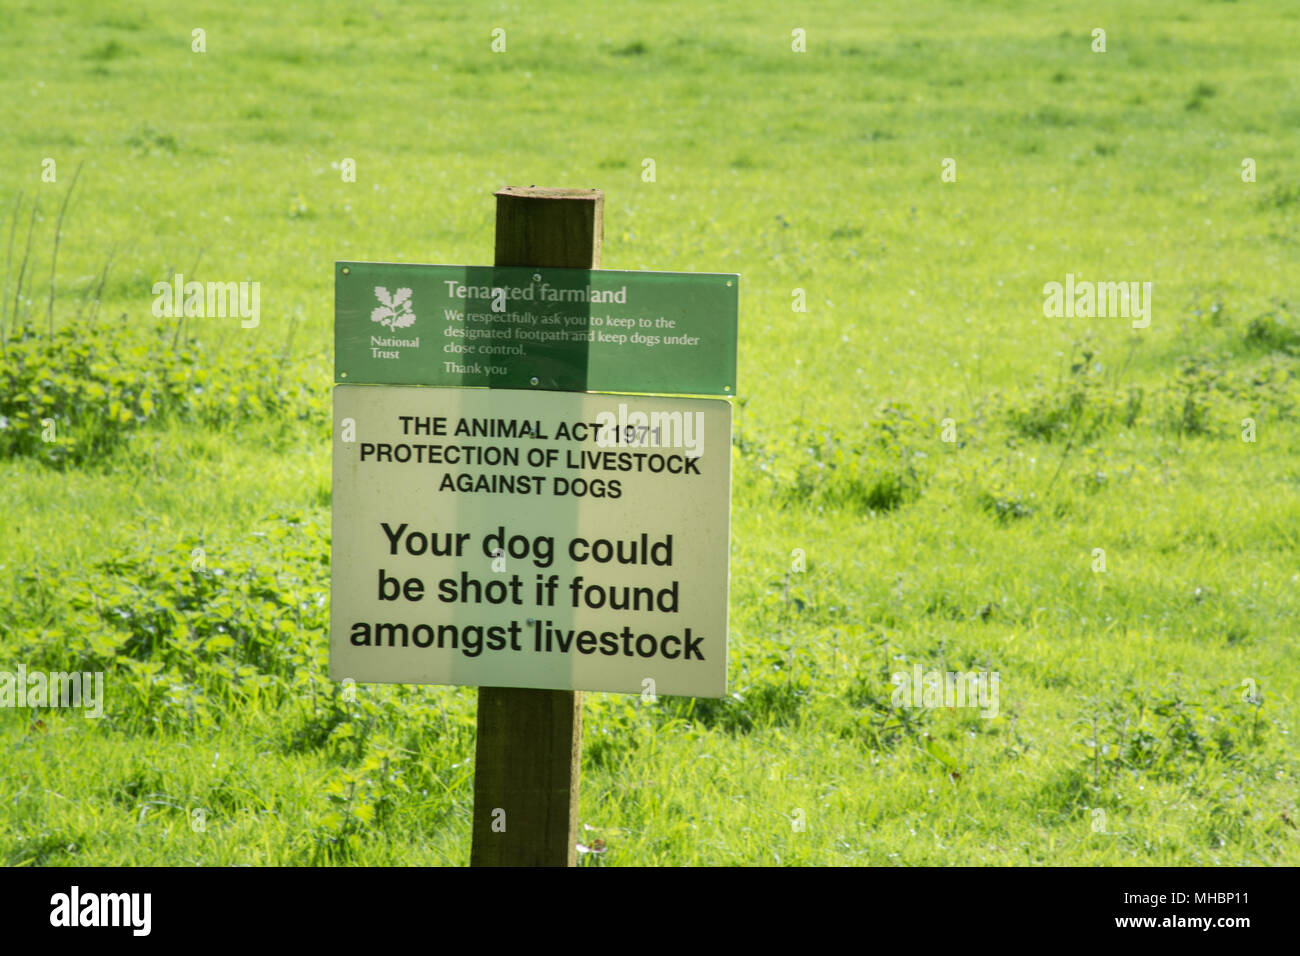 Zeichen im Feld unter Angabe der Tier Act 1971 Schutz von Tieren gegen Hunde - Der Hund könnte erschossen werden, wenn unter den Tieren gefunden Stockfoto